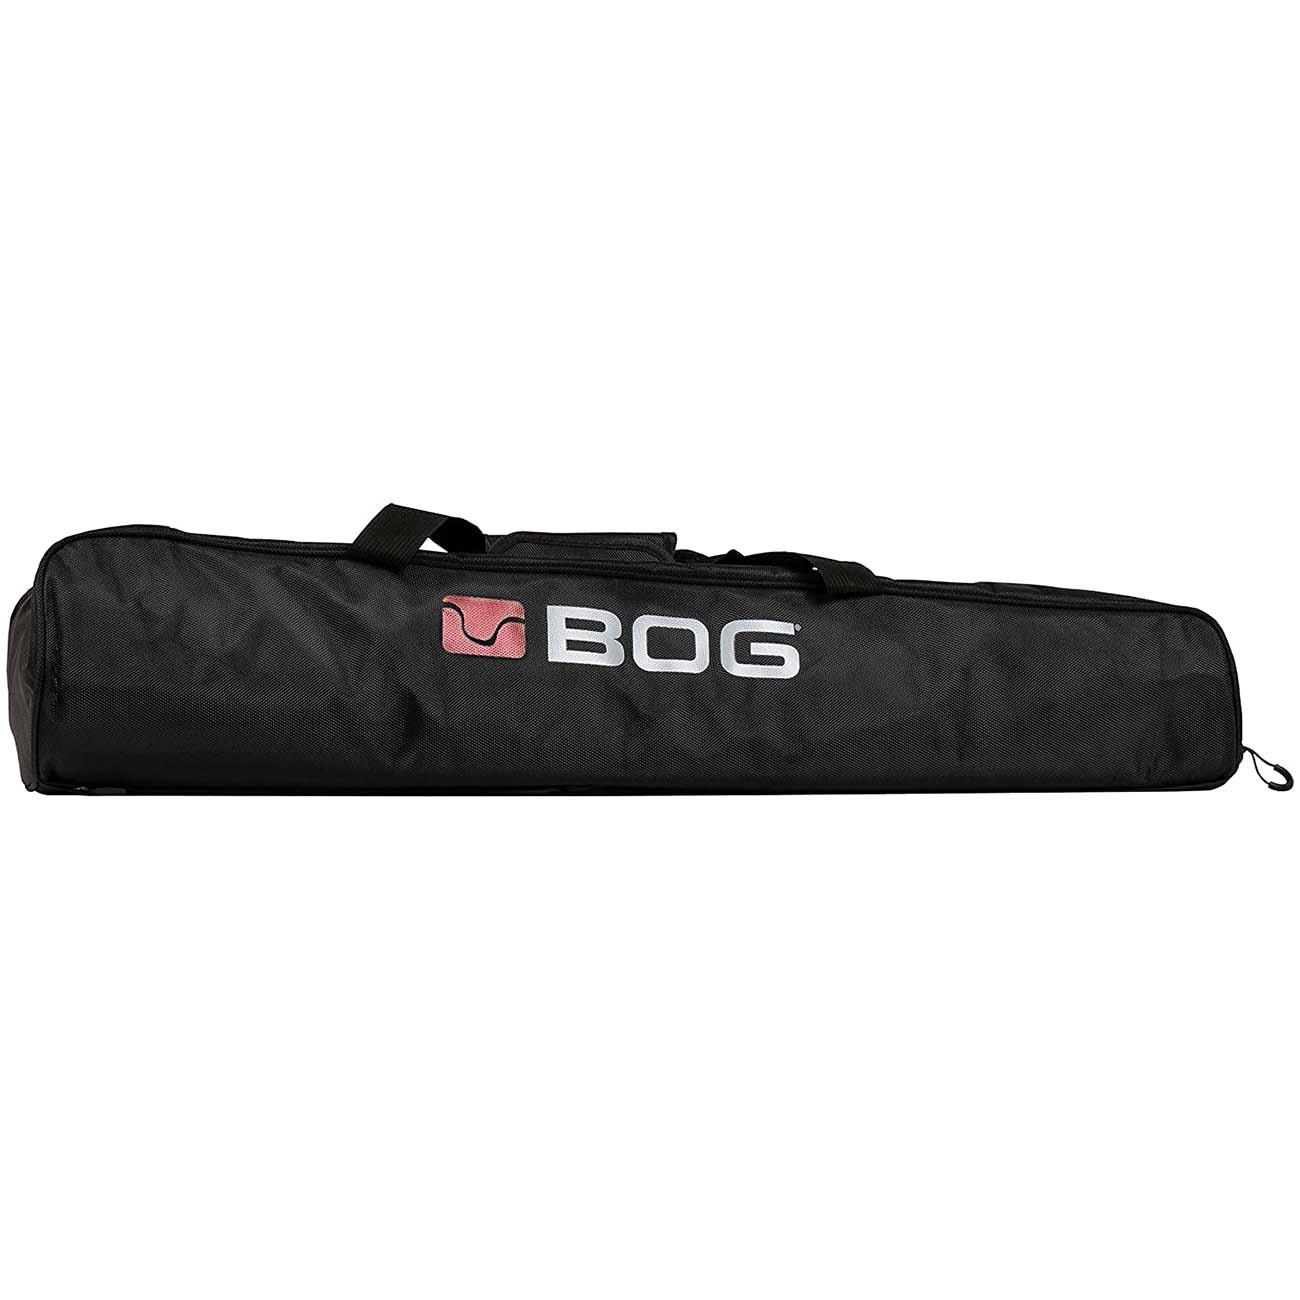 BOG DeathGrip Tripod Carry Bag with Adjustable Shoulder Strap